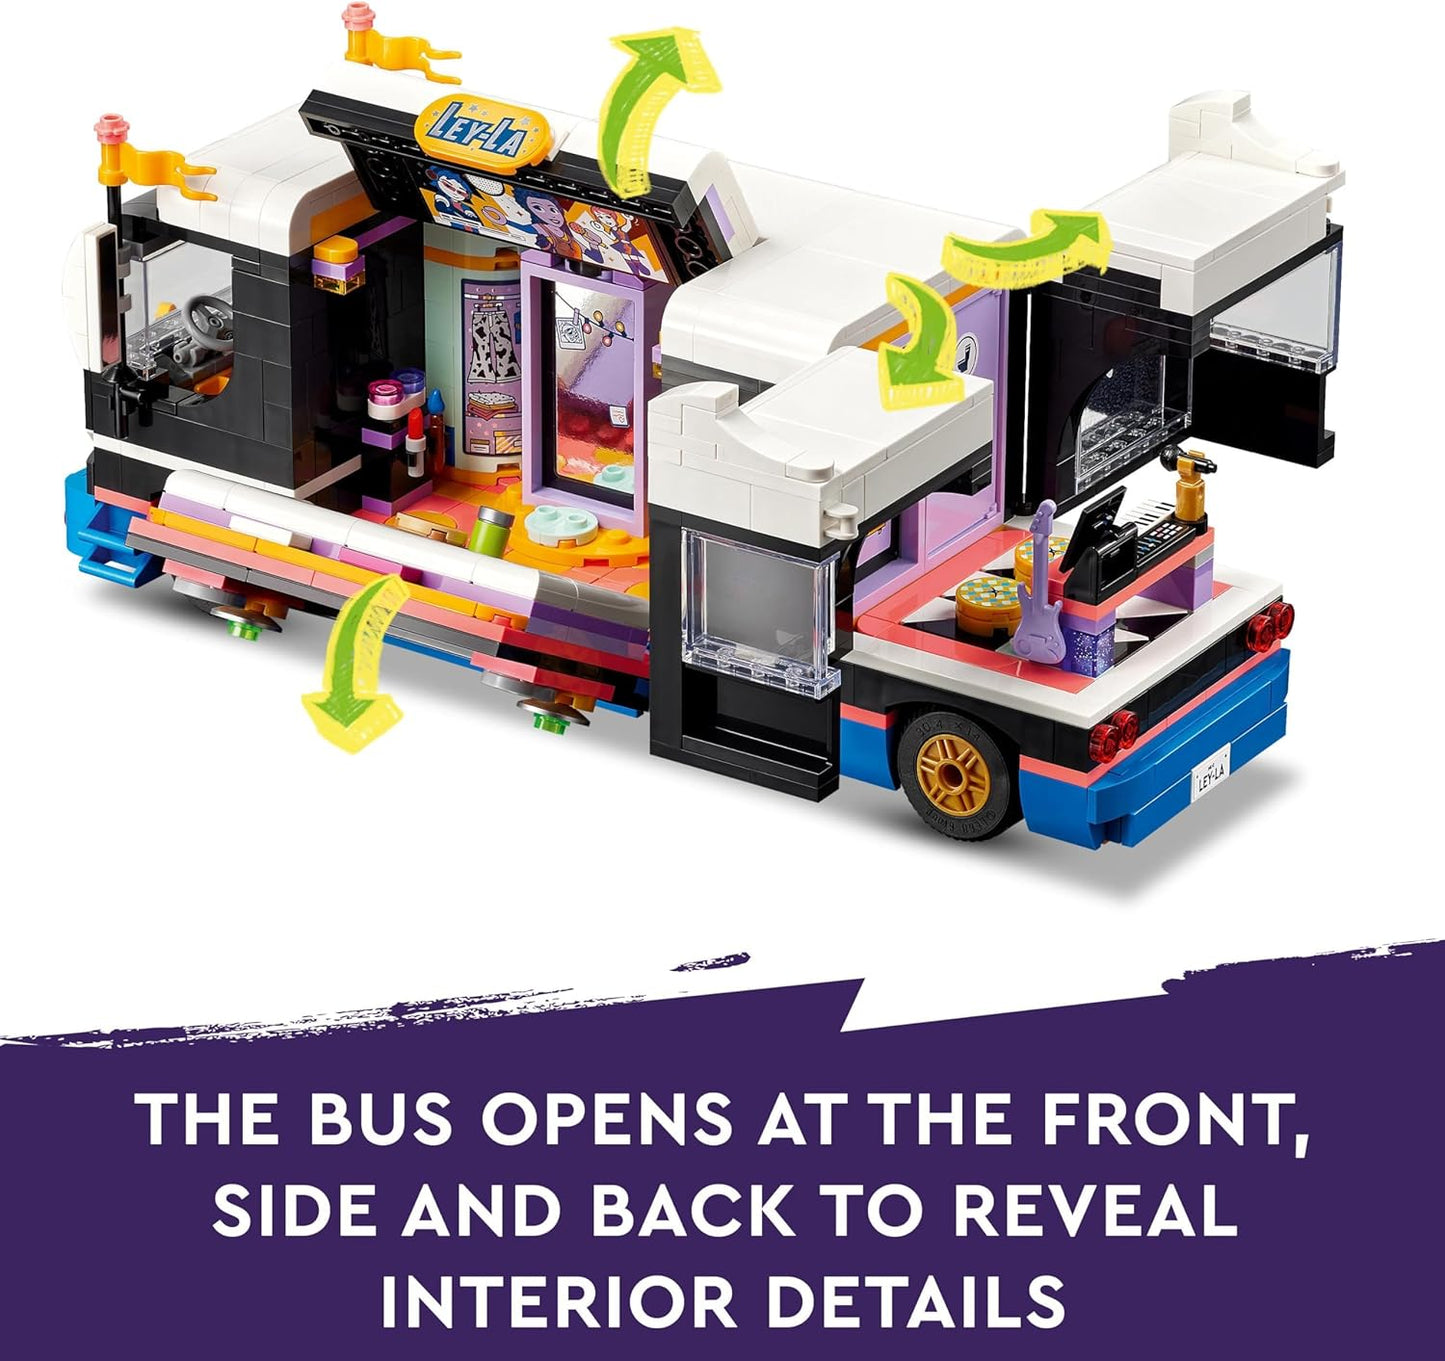 LEGO Brinquedo de ônibus de turismo musical Friends Pop Star para meninas, meninos e crianças de 8 anos ou mais, kit de construção de veículos com 4 personagens minibonecas para aventuras musicais, ideia de presente 42619